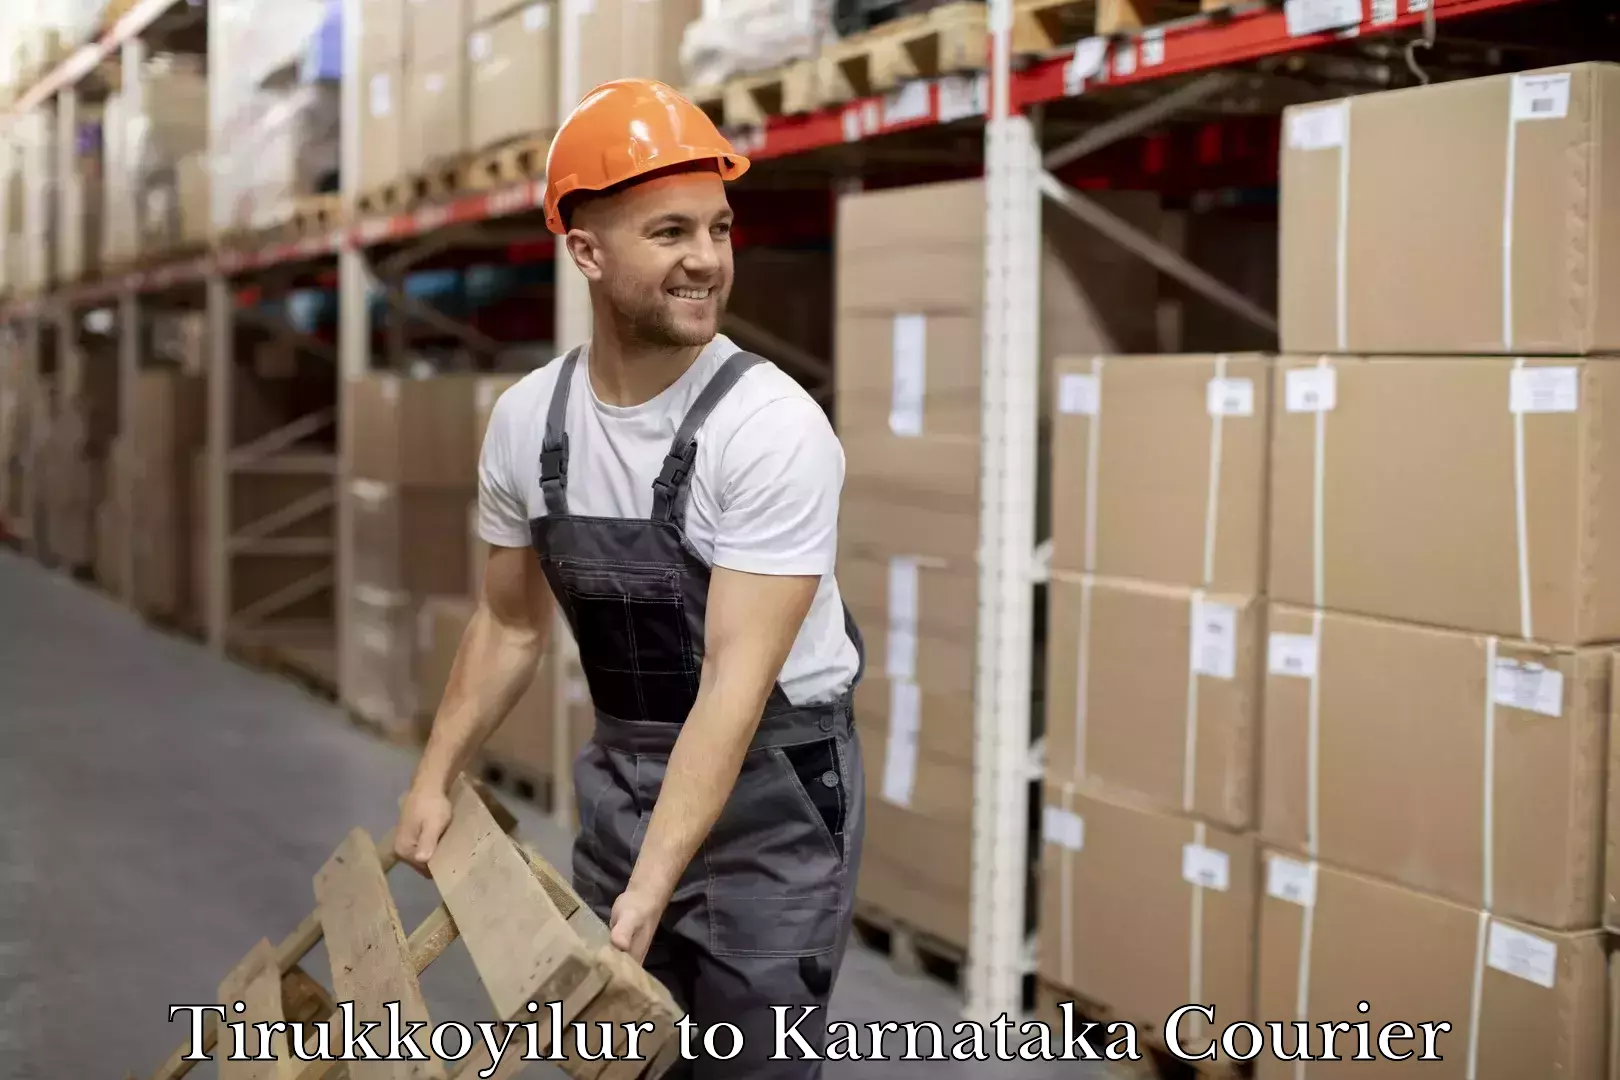 Dynamic courier operations Tirukkoyilur to Karnataka